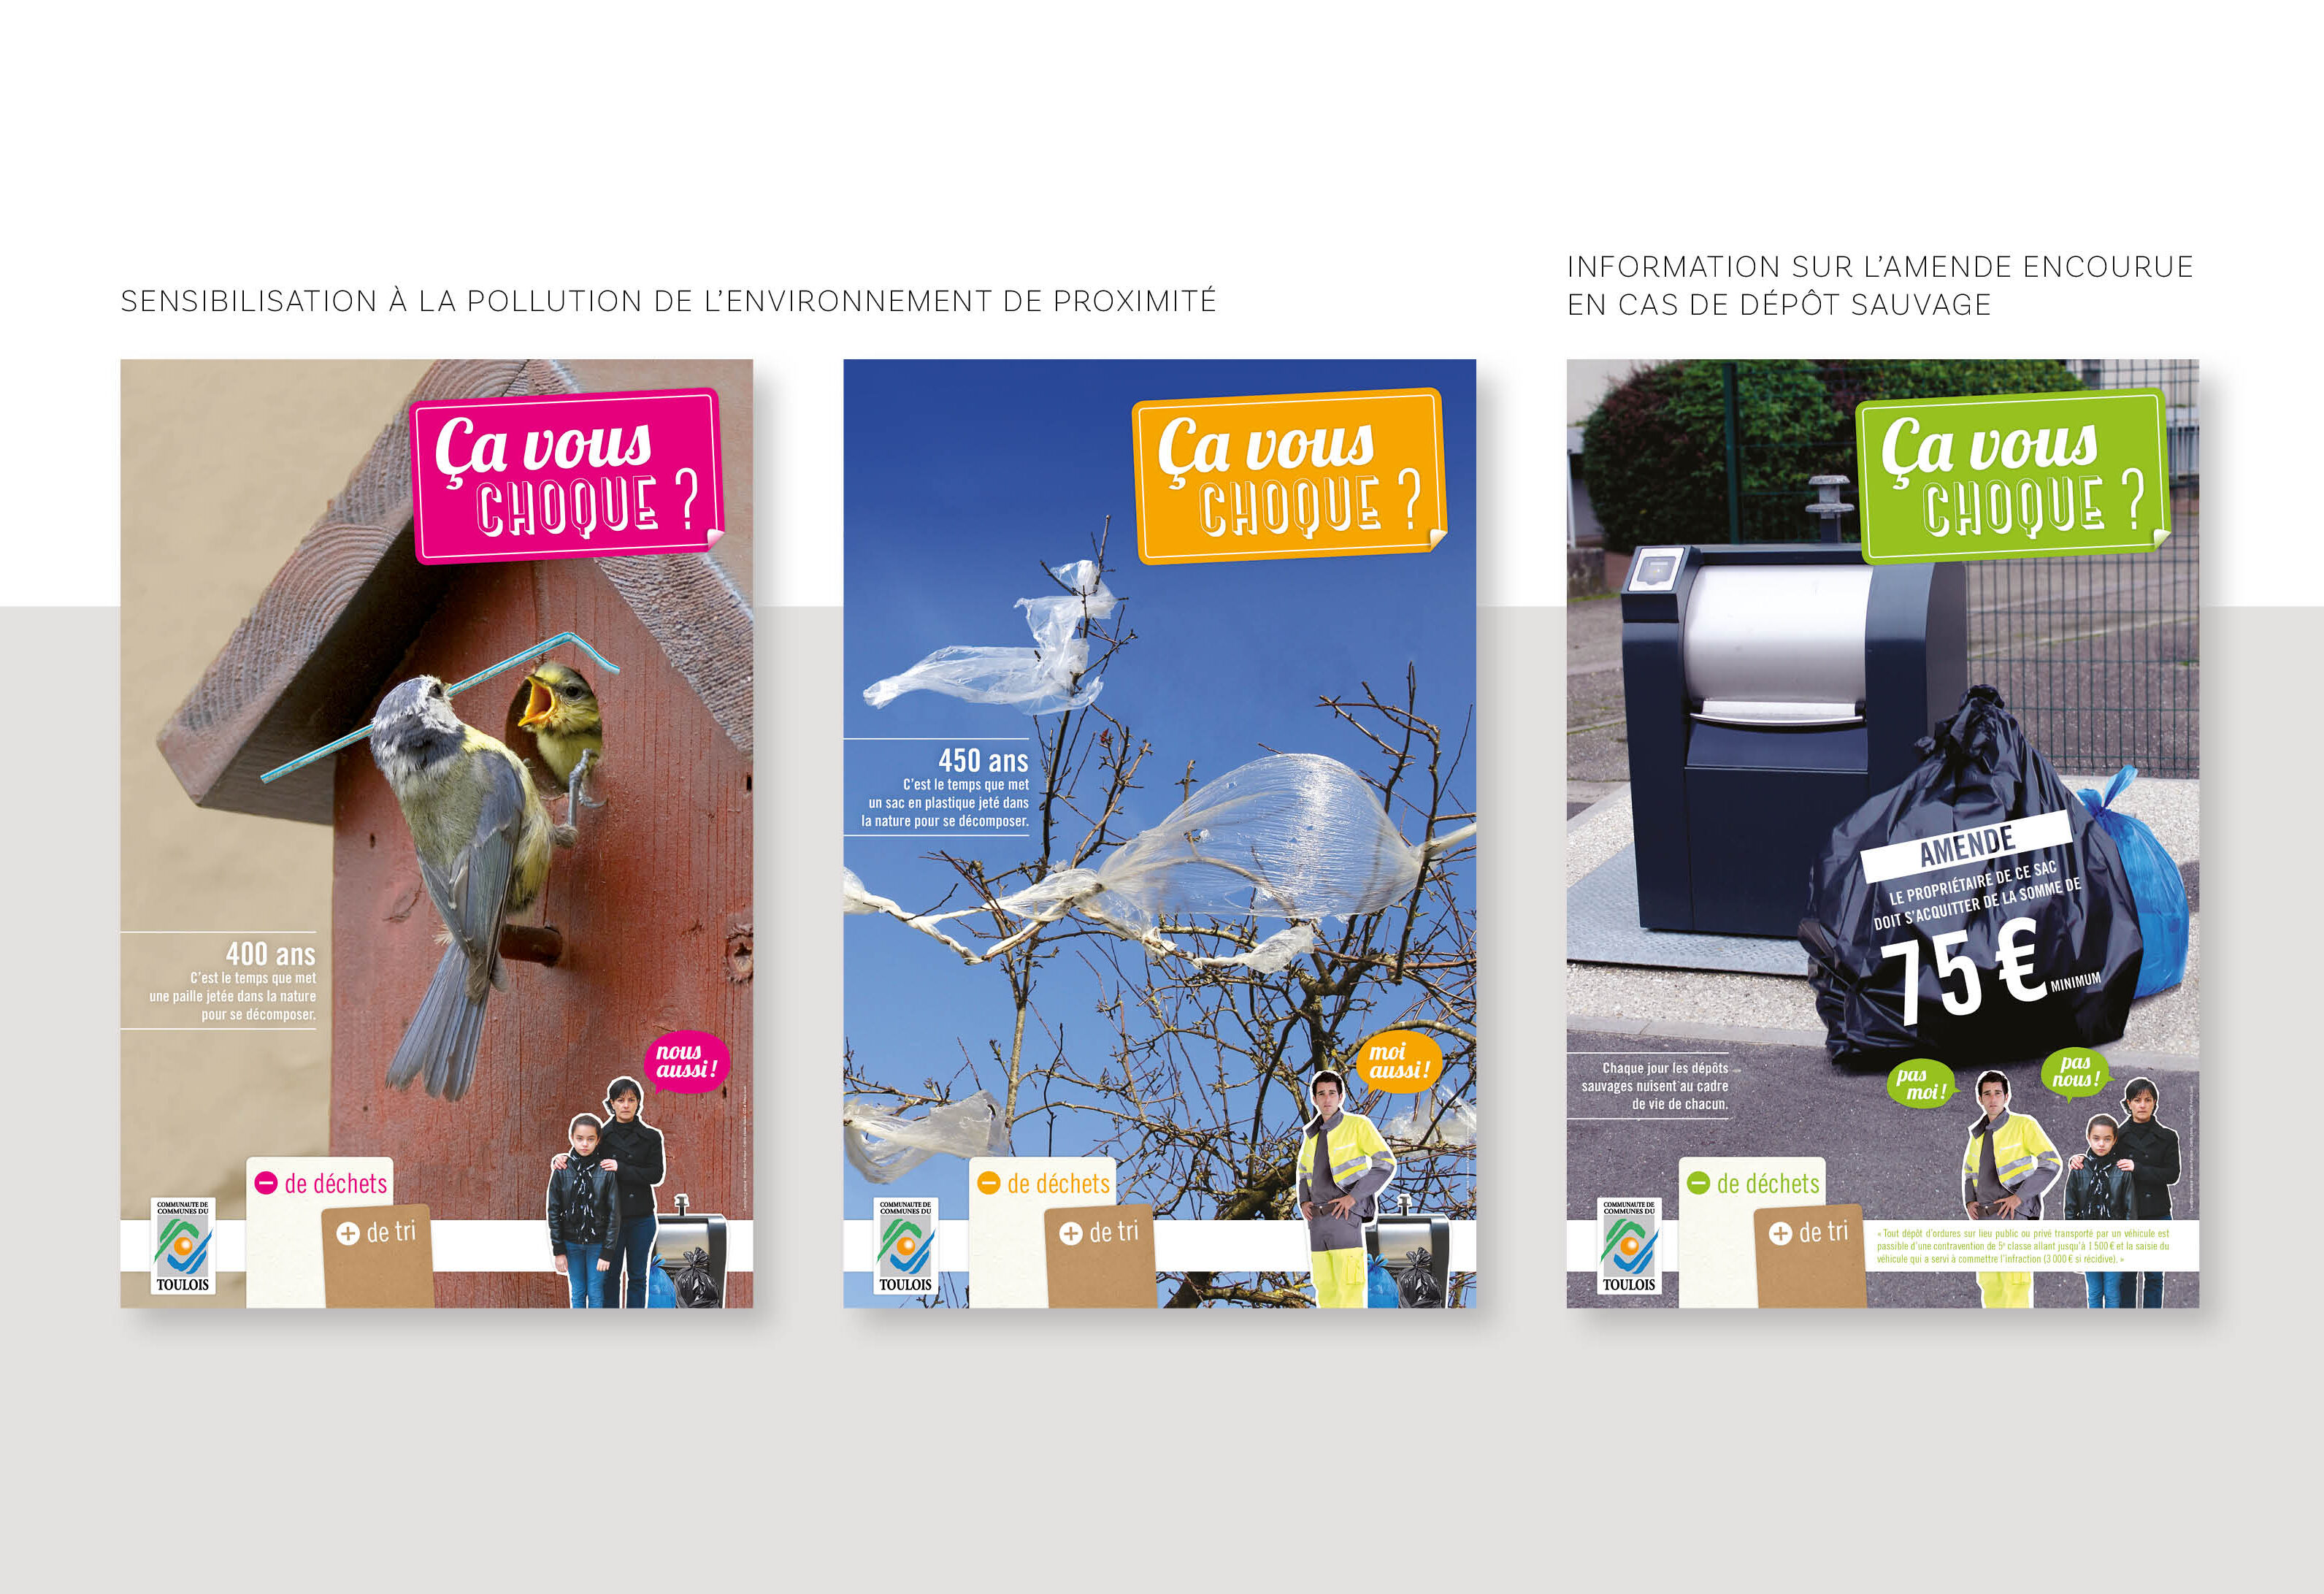 Communauté de communes de Terres Touloises - Campagne 2014-2015 : Dépôts sauvages et TEOMI - Création graphique - audit et accompagnement - transition écologique - Stratégie de communication